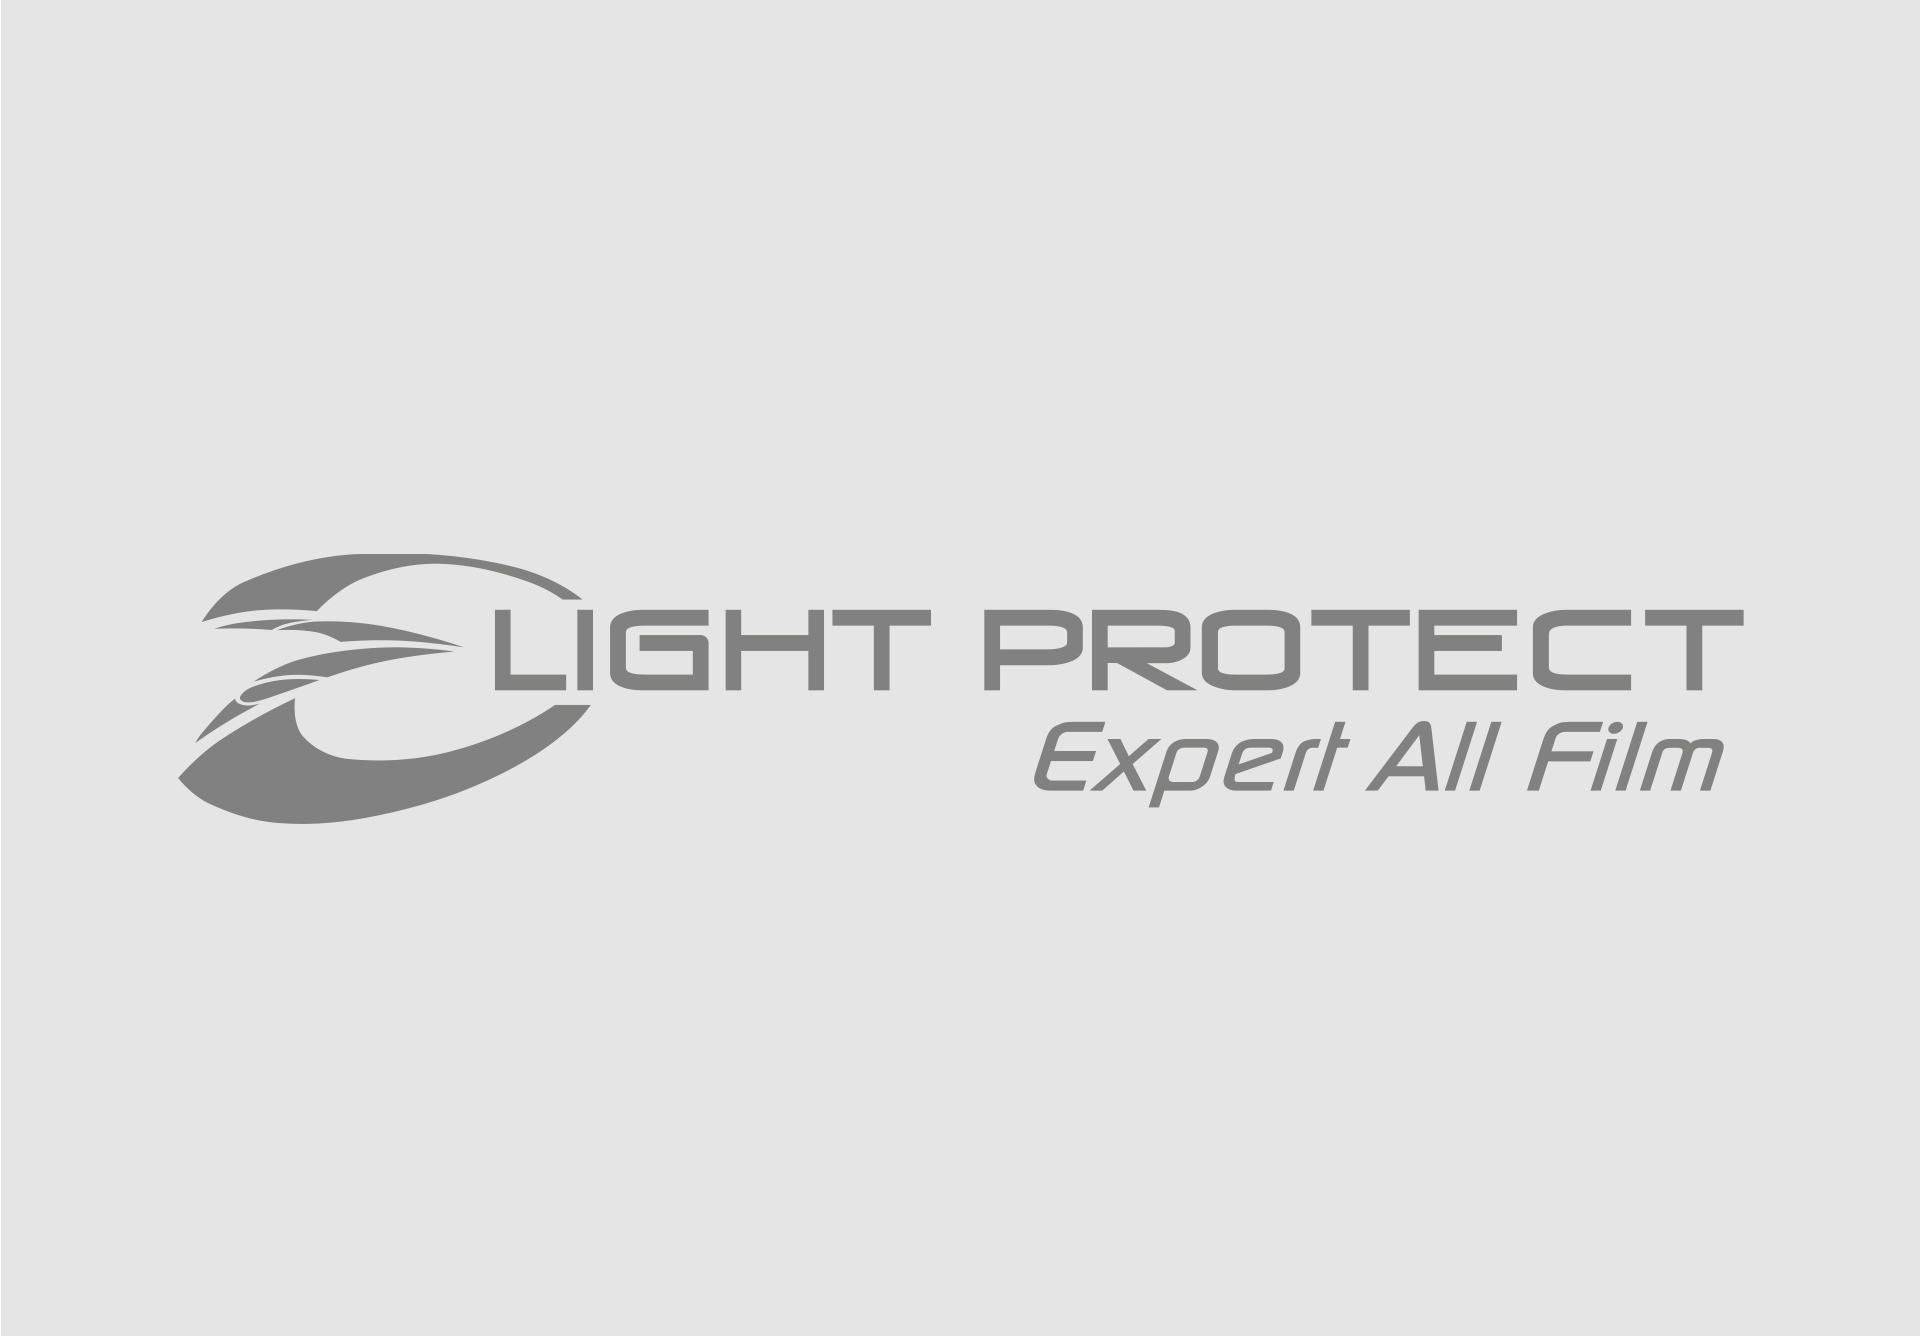 Light Protecht - Expert All Film